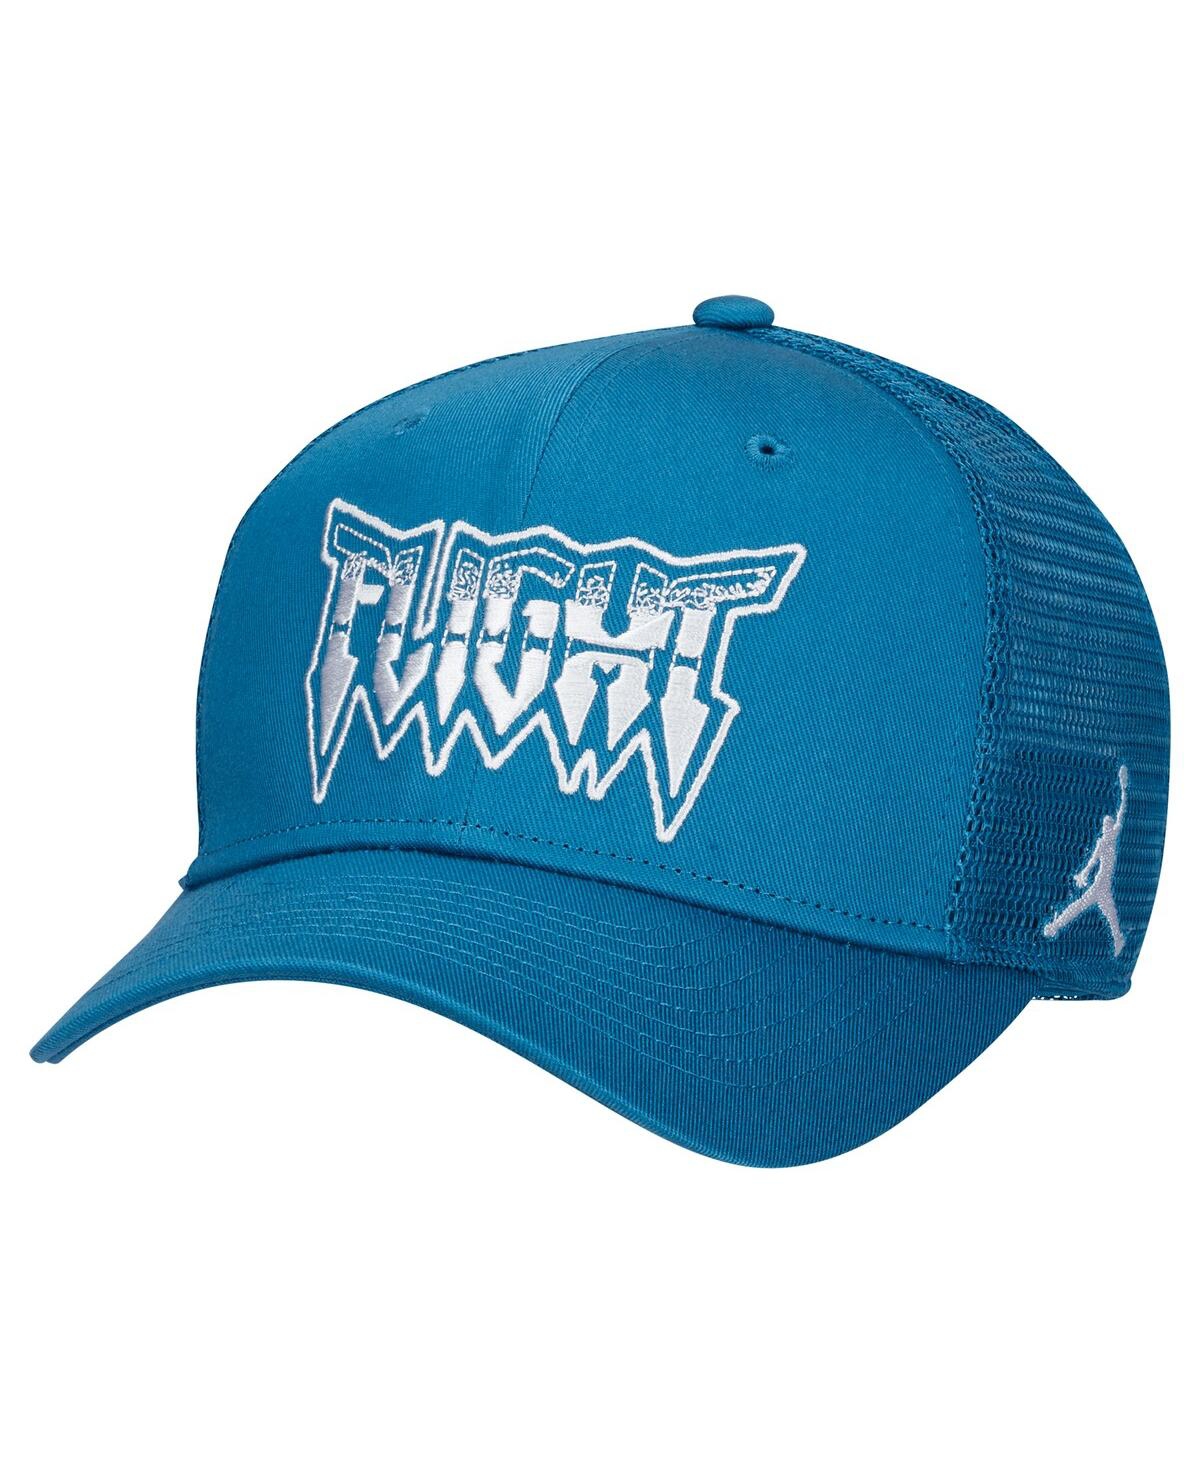 Men's and Women's Men's Blue Trucker Adjustable Hat - Blue